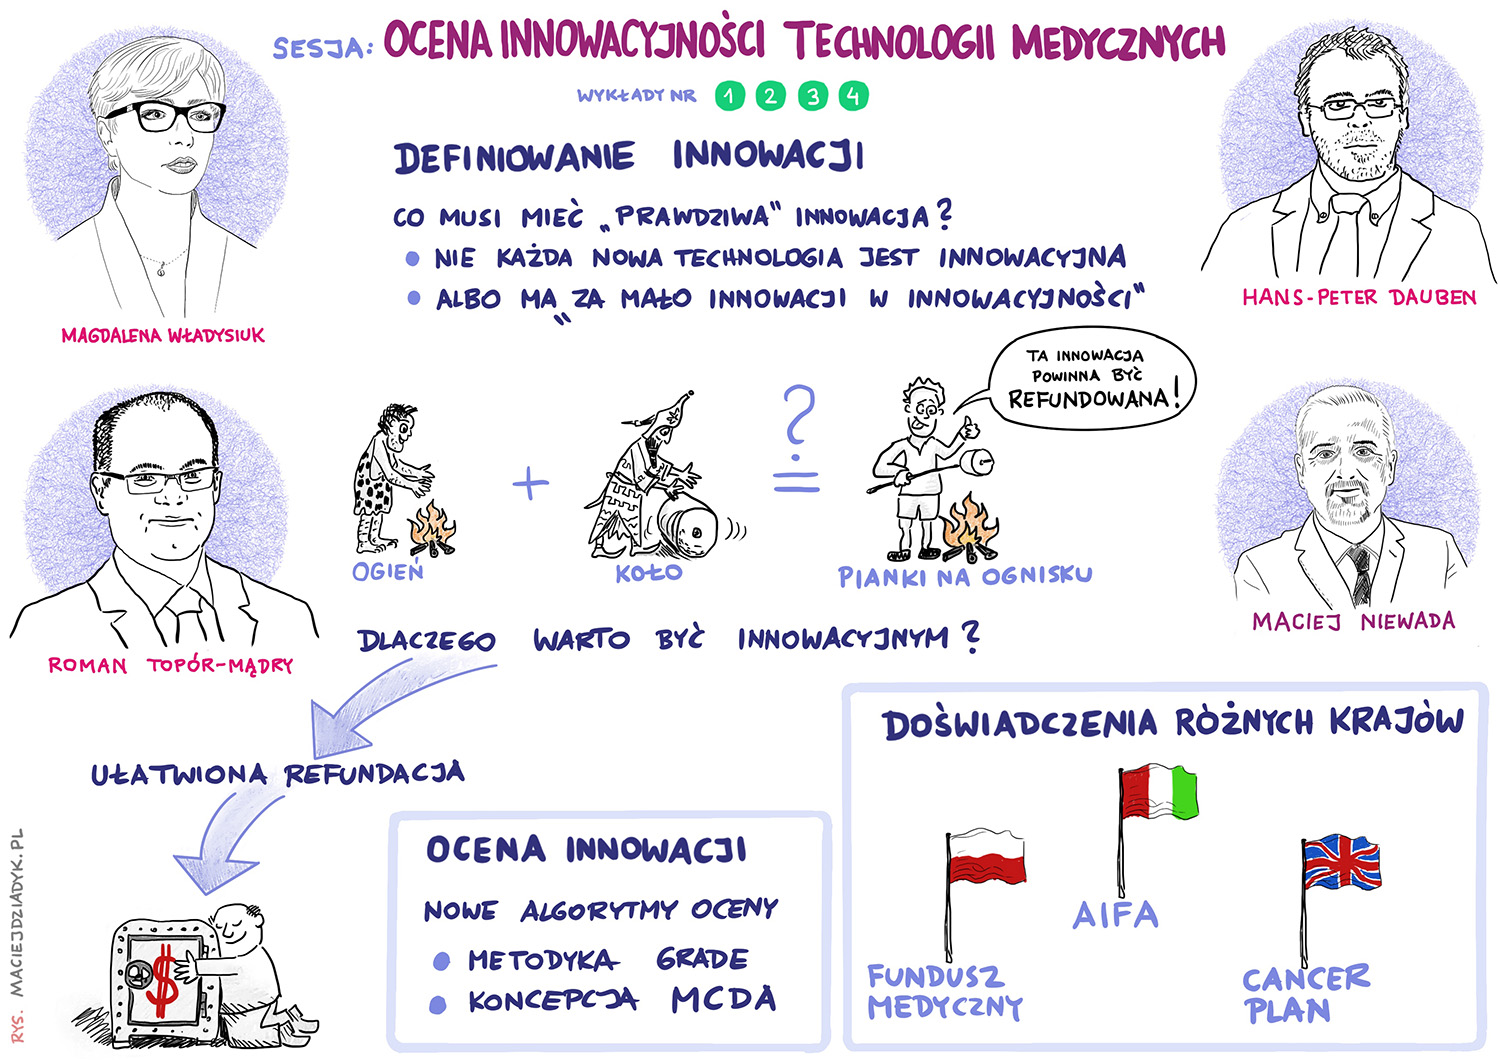 Sesja 1. Ocena innowacyjności technologii medycznych. Rys. Maciej Dziadyk maciejdziadyk.pl